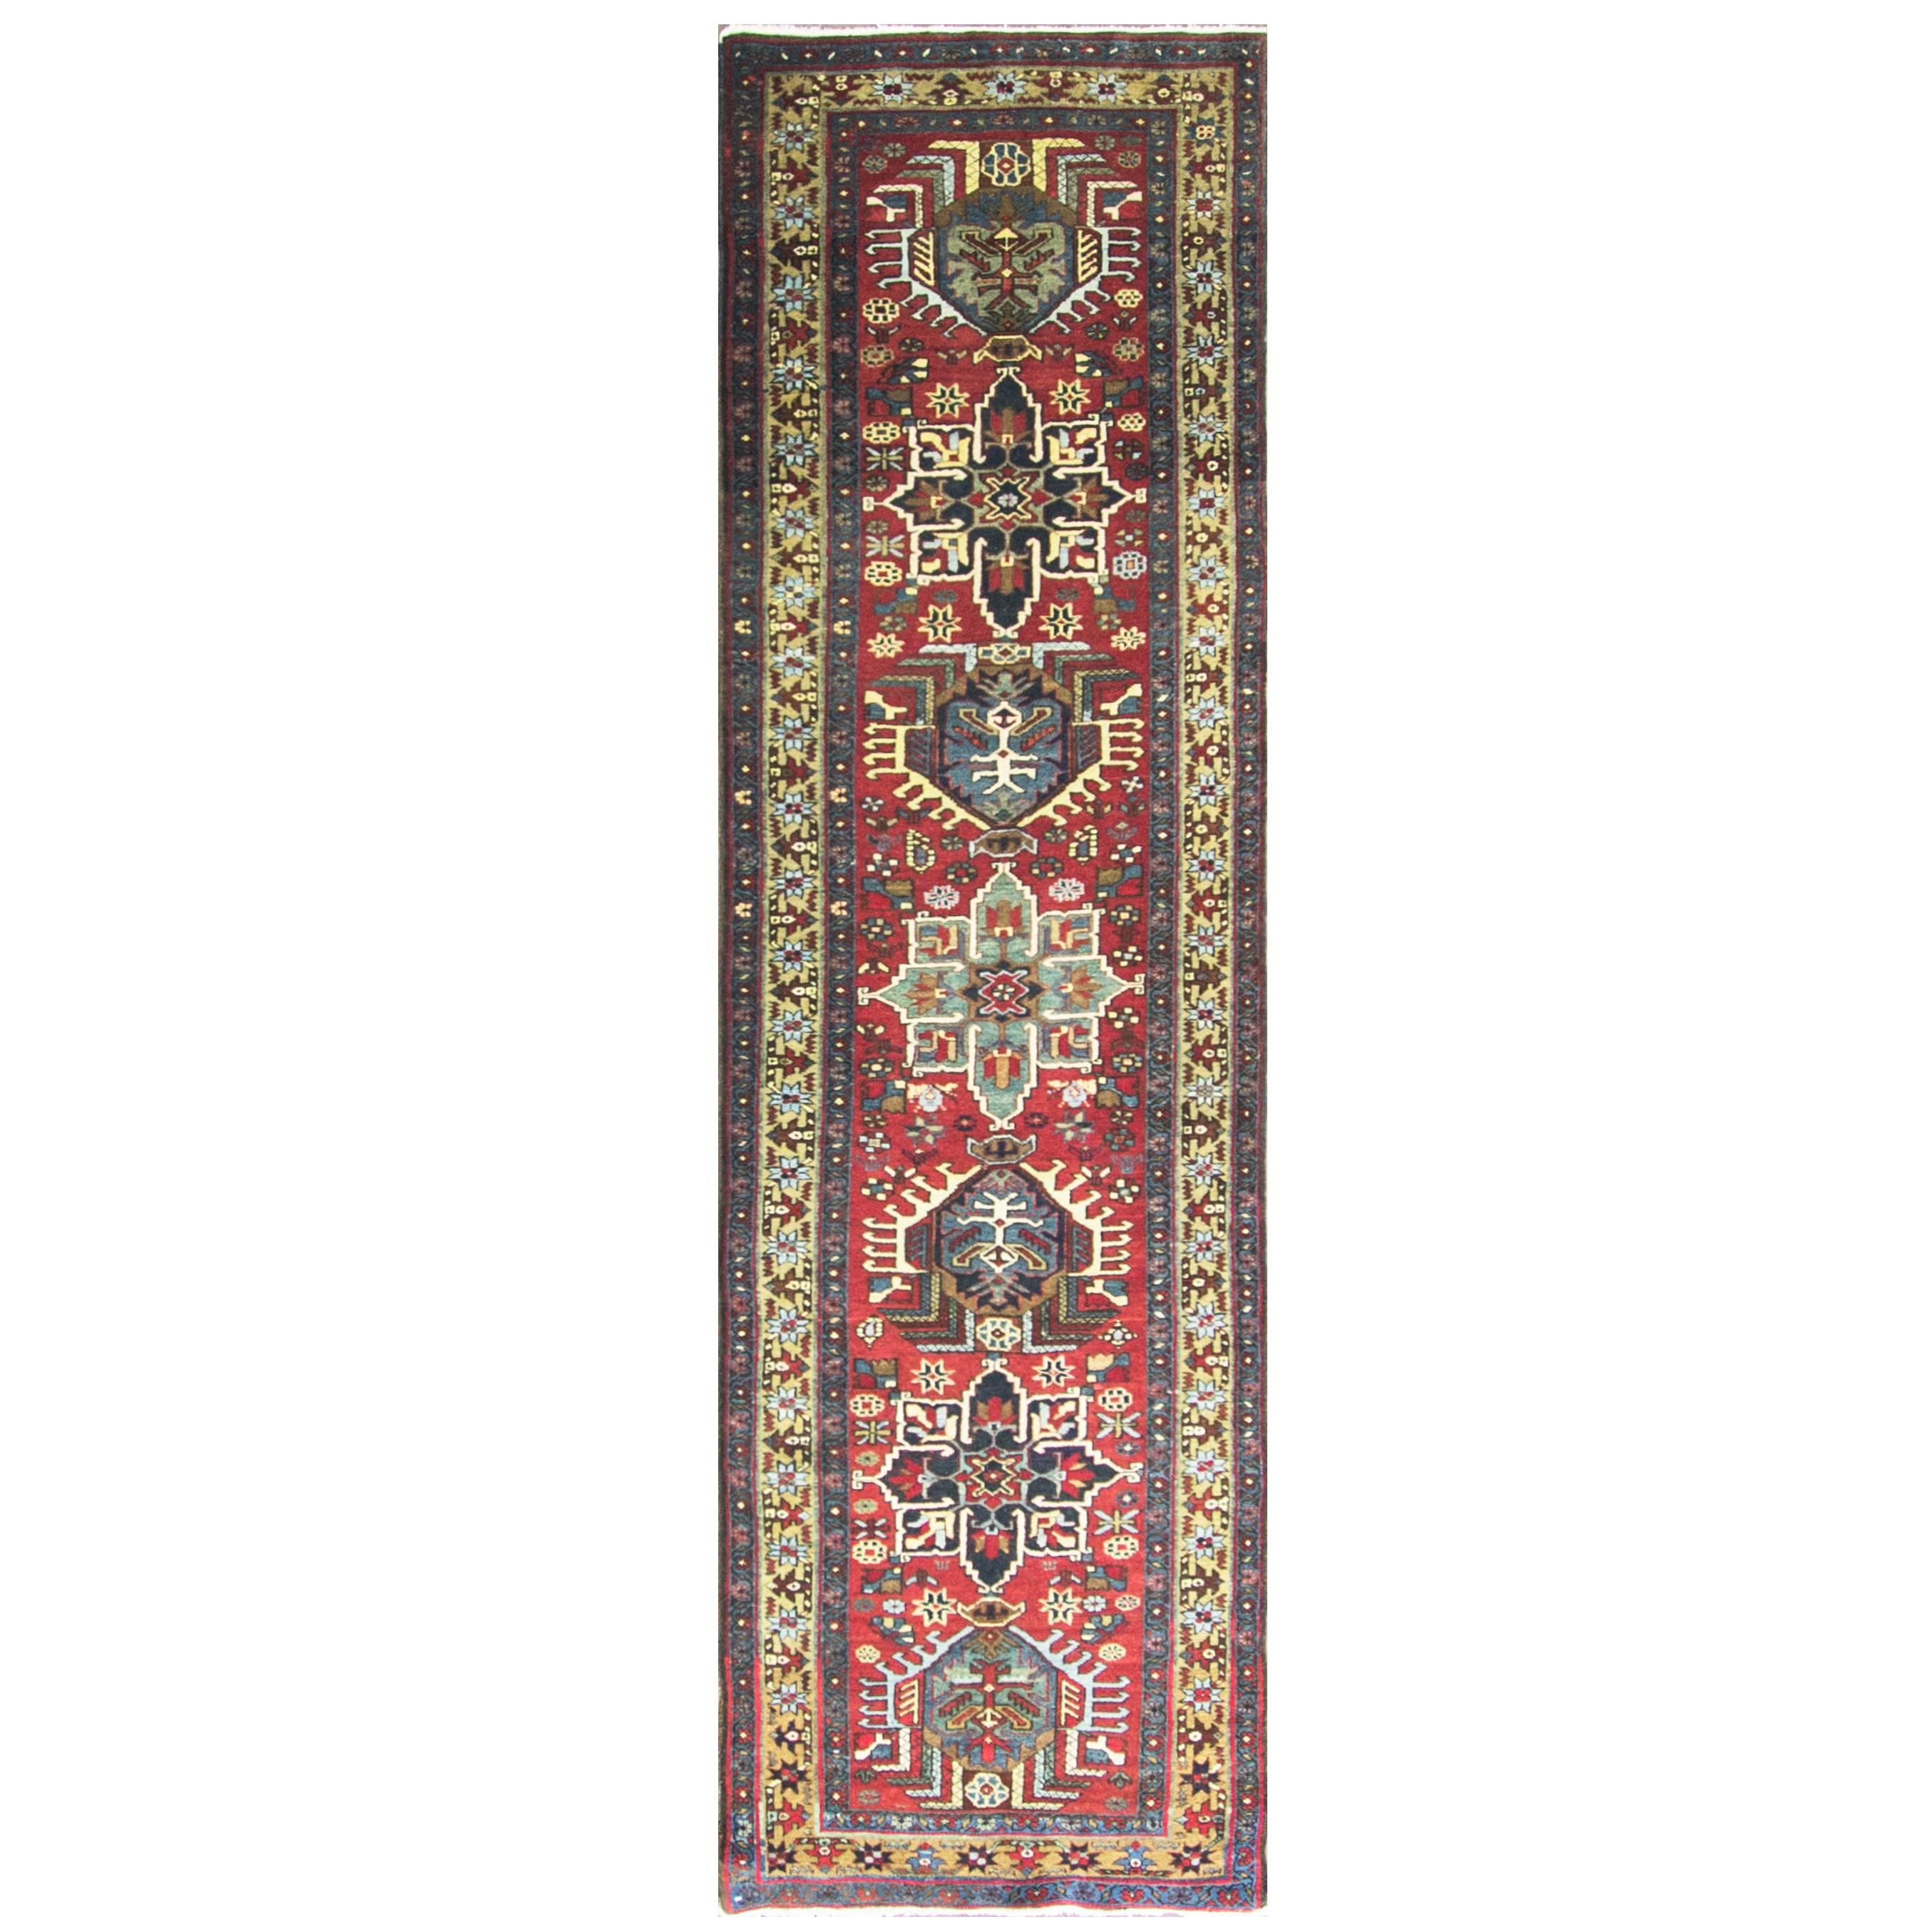 Antique Persian Karaja/ Heriz Runner, 2'9" x 10'.